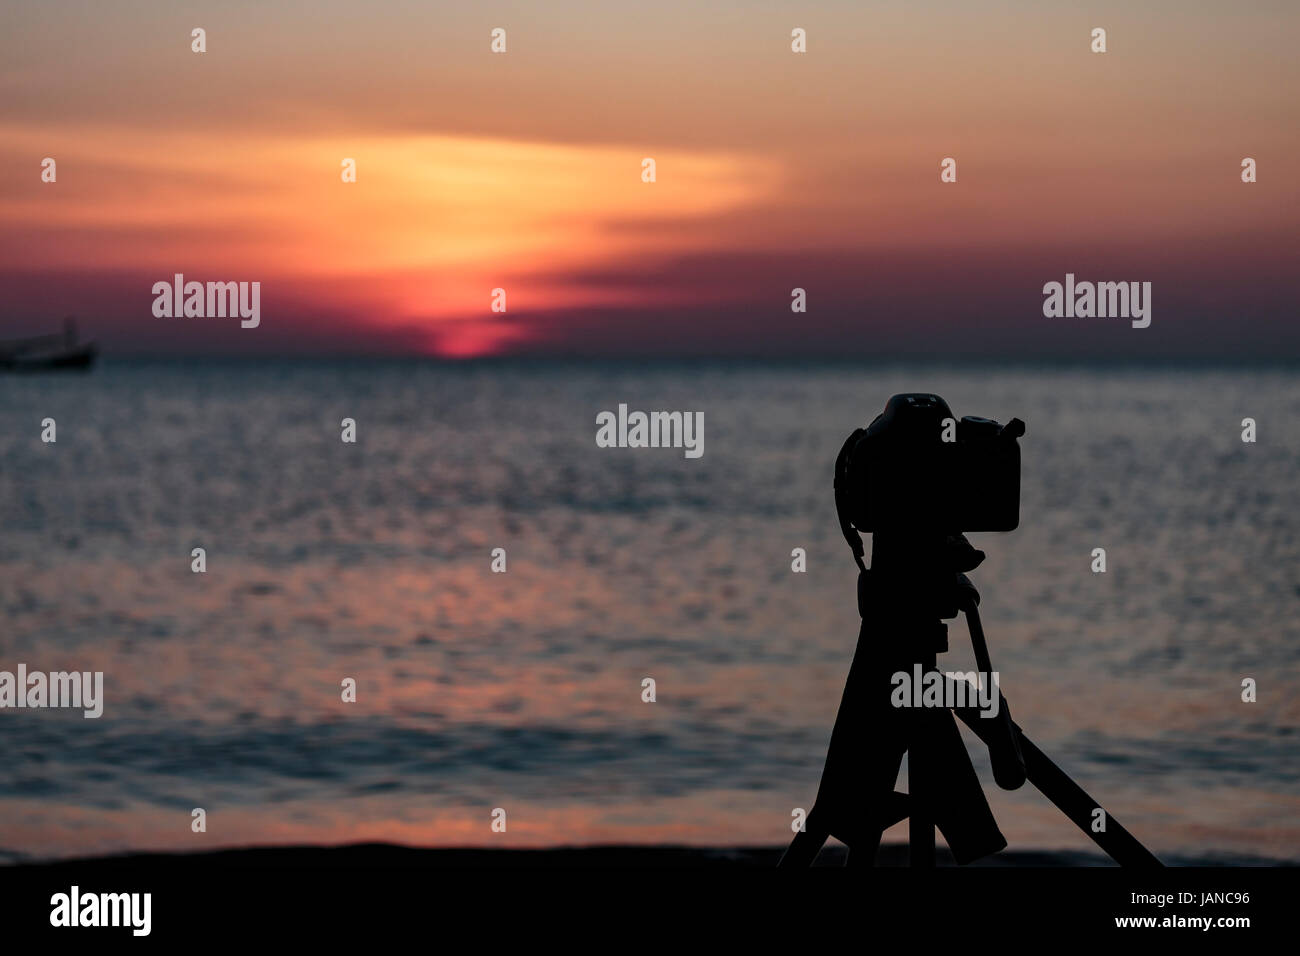 Kamera auf ein Stativ, um die Sonne und die Landschaft fotografieren Stockfoto